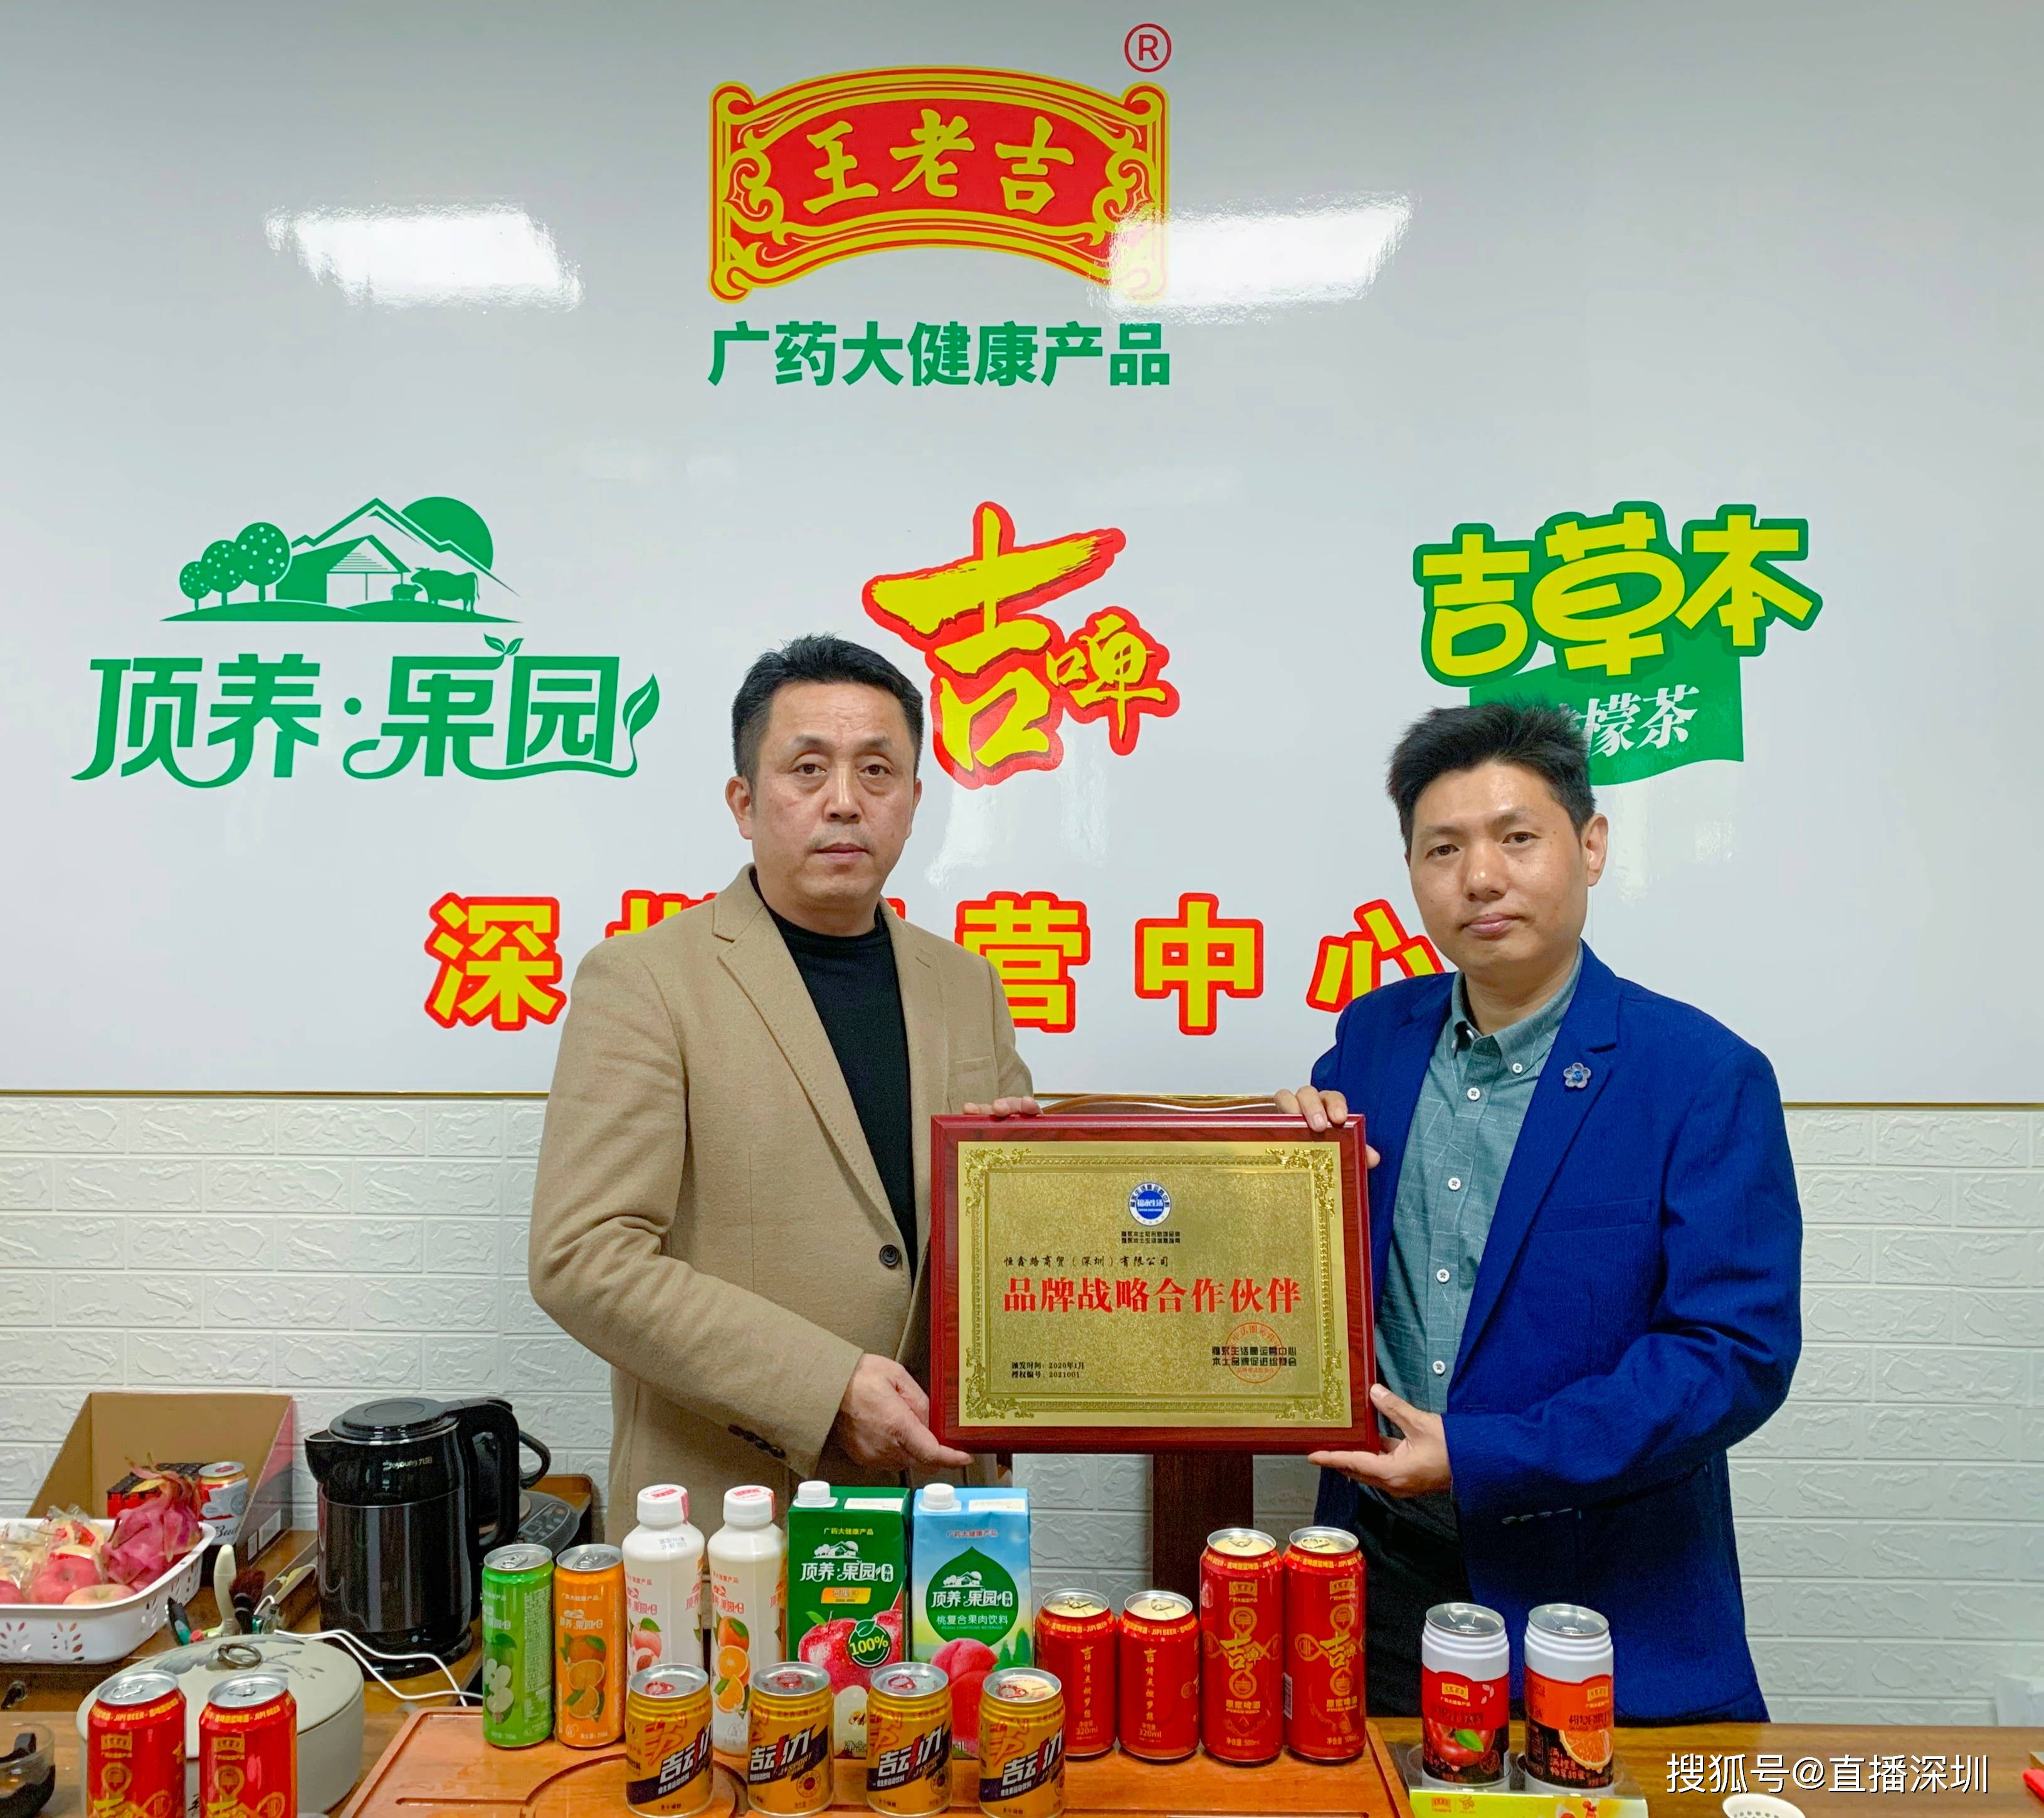 广药王老吉大健康产品深圳区总代与福永新媒运营团队签署战略合作伙伴